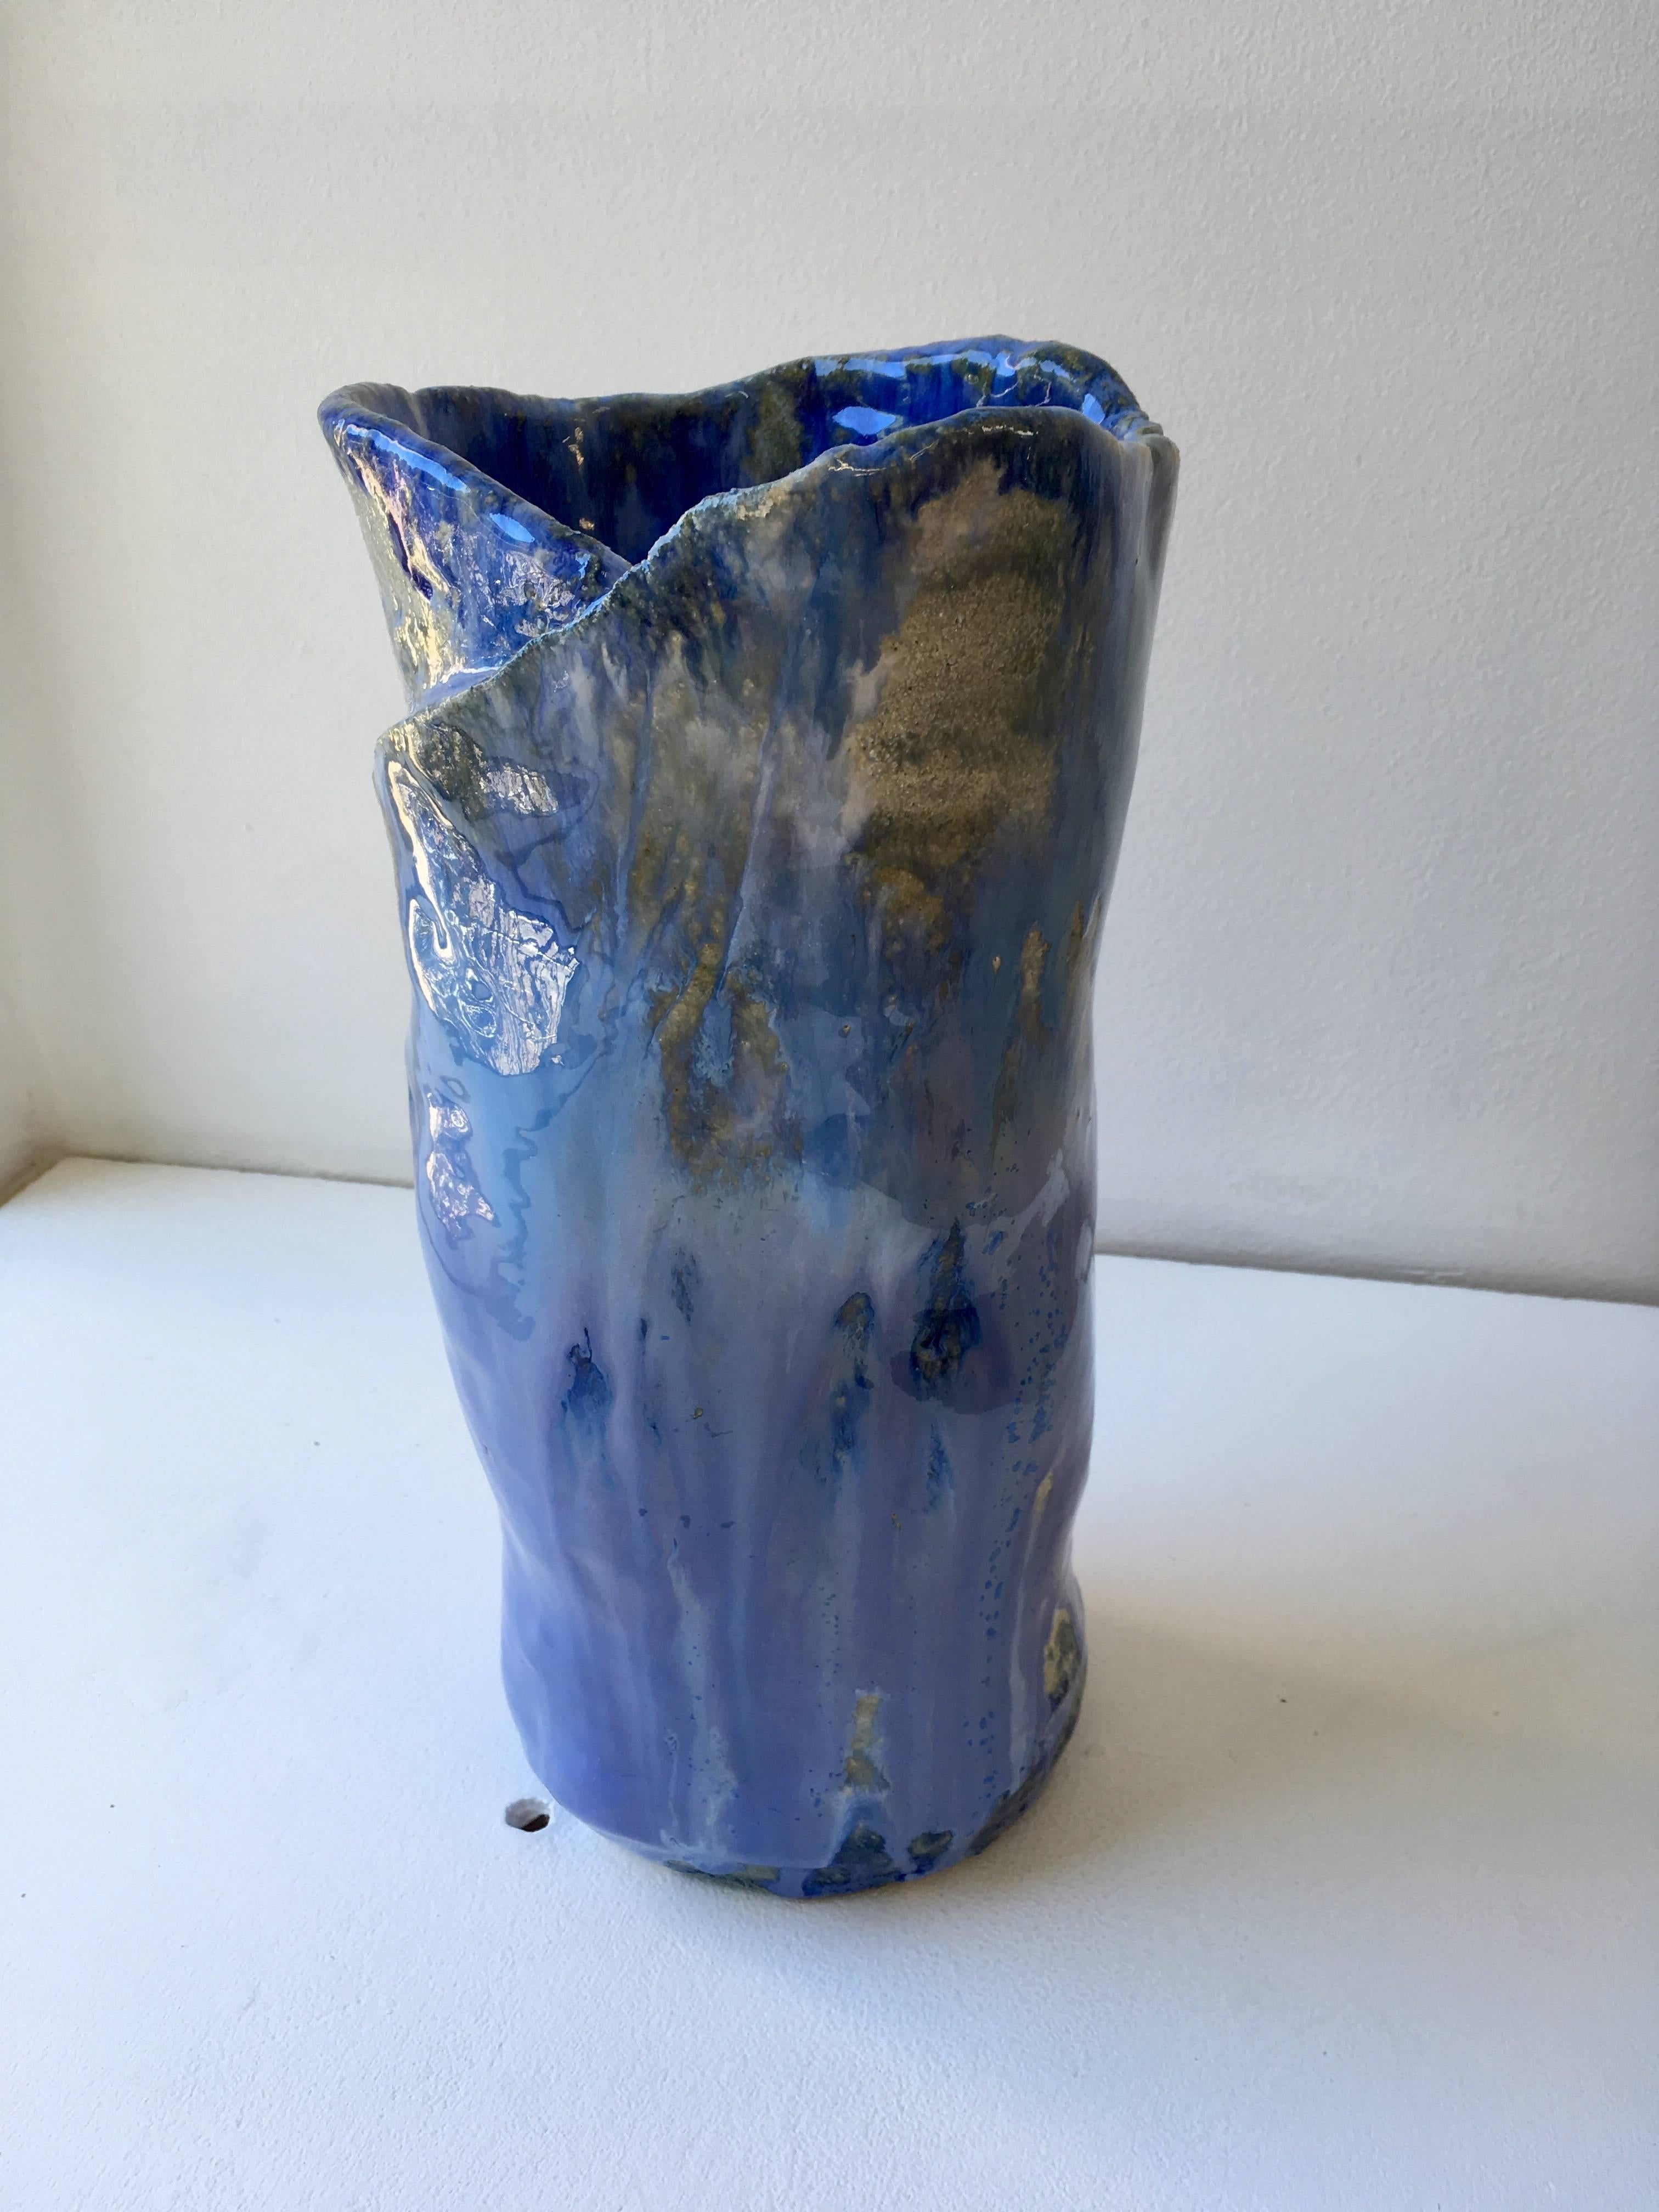 blue ceramic vases